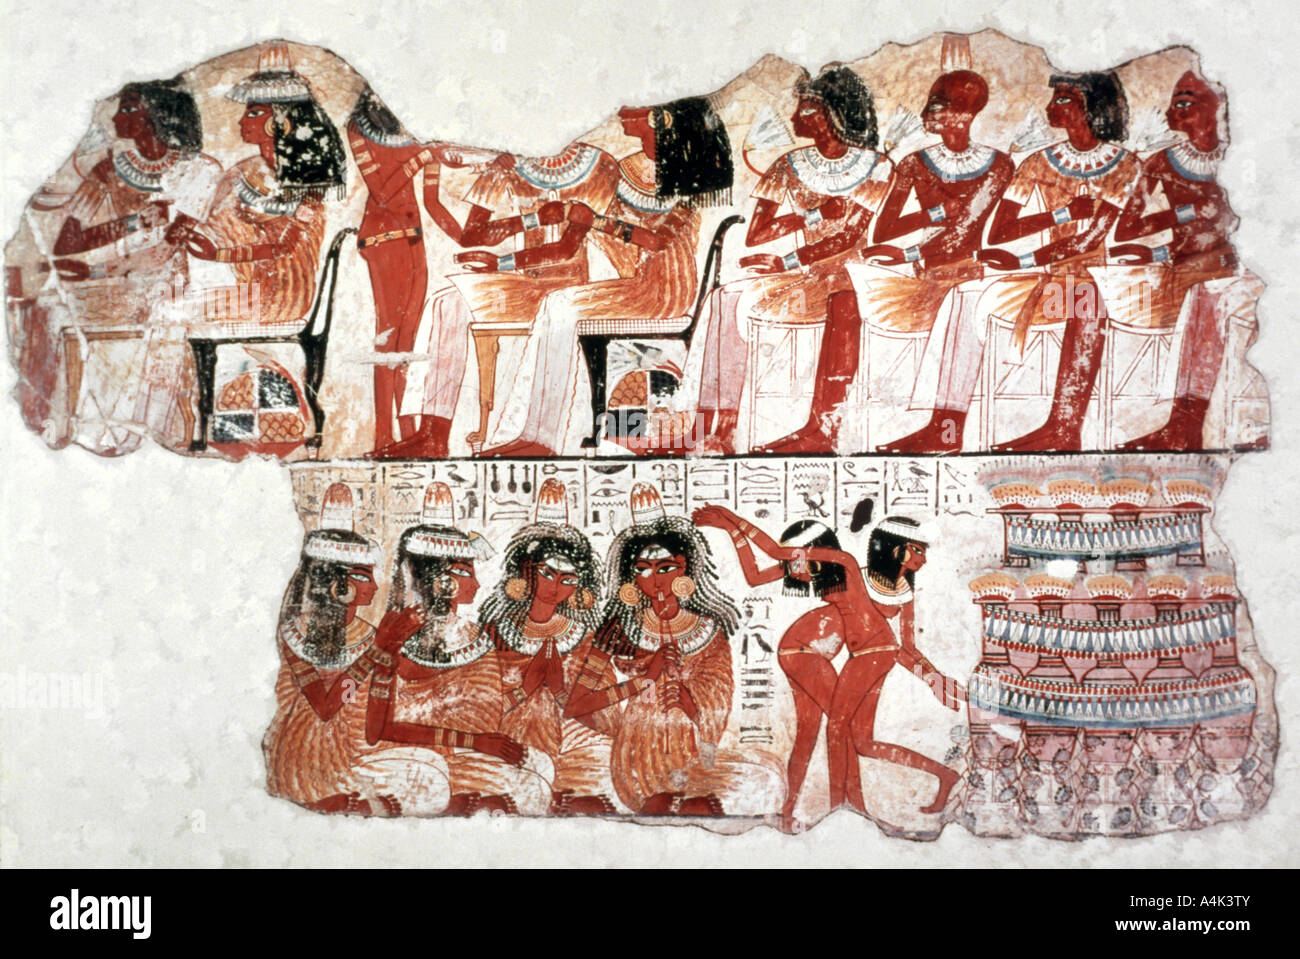 Scène du banquet, peinture murale, Tombe de Nebamun, Thèbes, 18ème dynastie. Artiste : Inconnu Banque D'Images